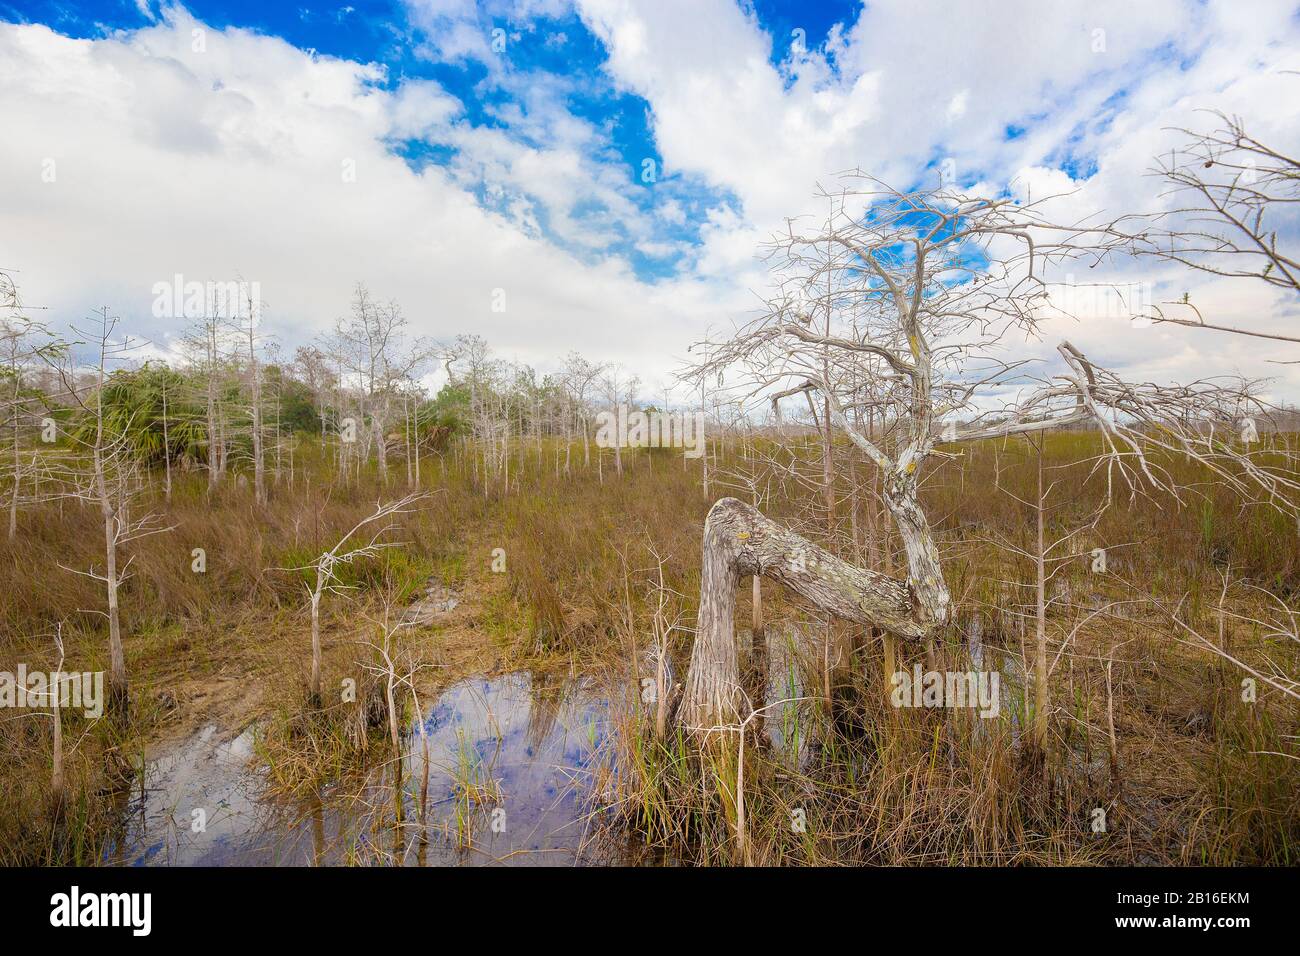 Il bellissimo e unico 'Z Tree' situato nella foresta di Dwarf Cypress nel Parco Nazionale delle Everglades. Foto Stock